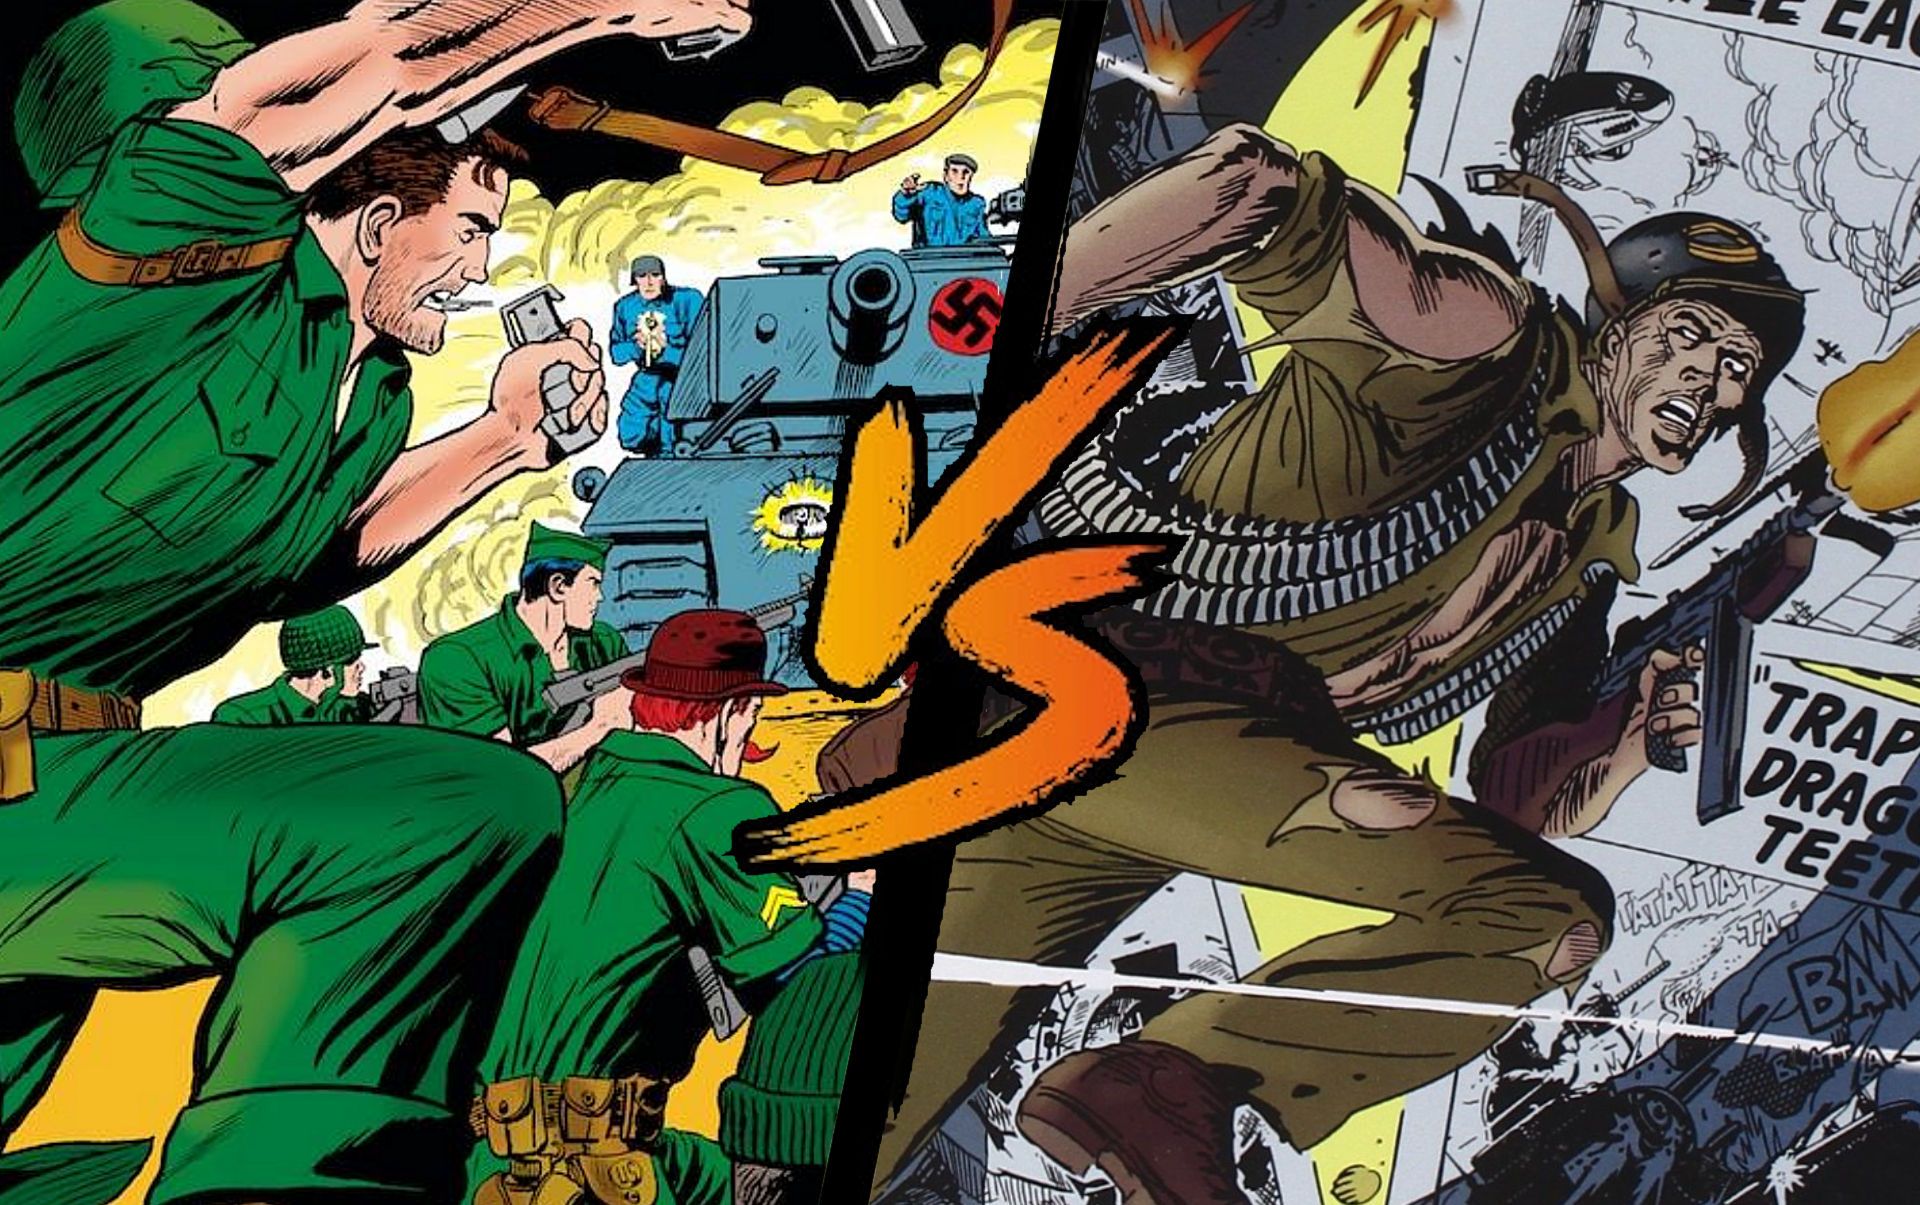 SGT. Fury (Marvel) vs SGT. Rock (DC Comics)